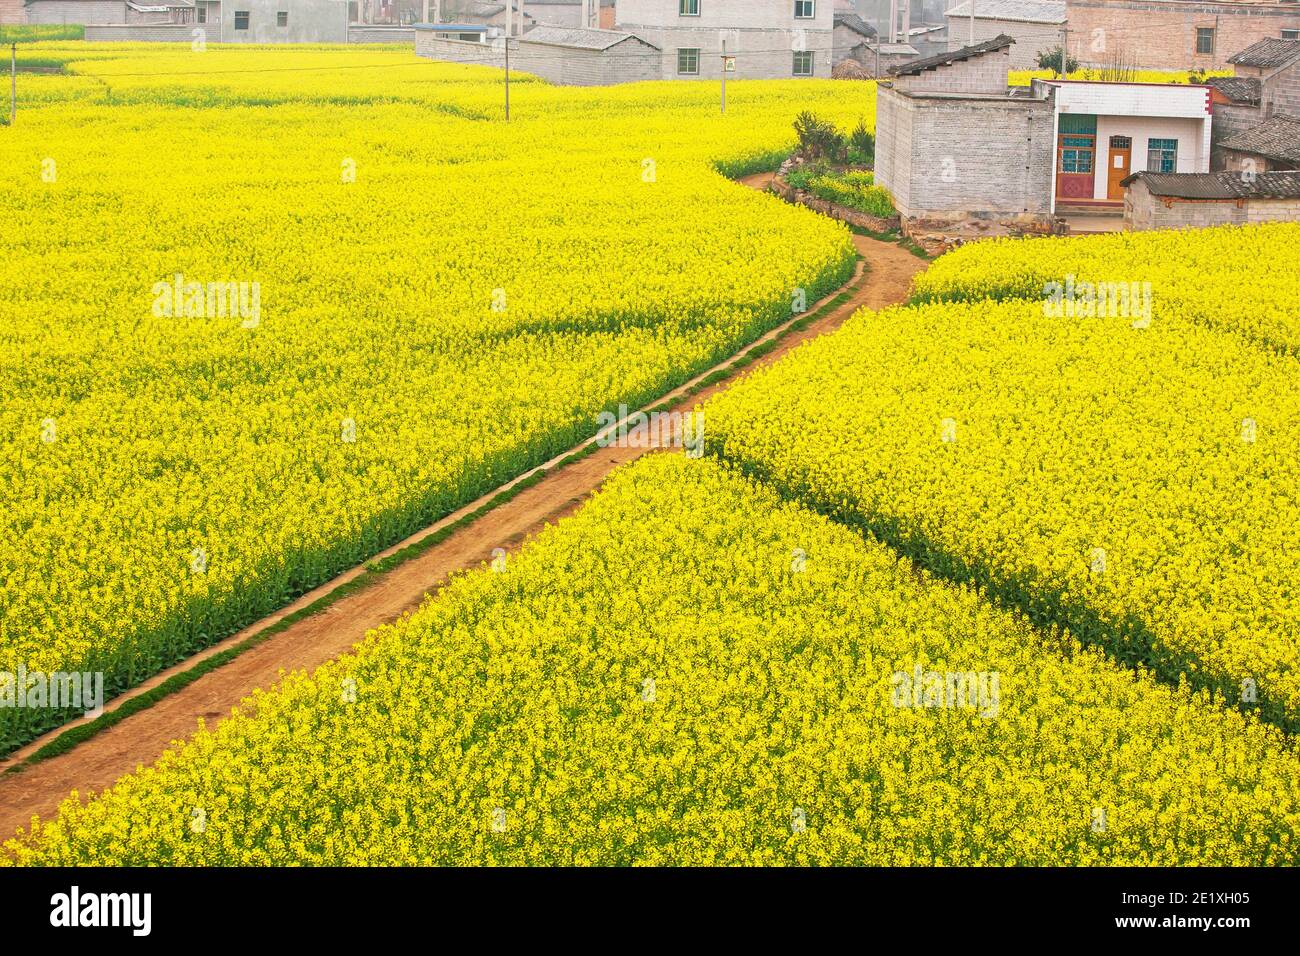 Luftaufnahme eines Feldweges durch Senffelder sind in Blüte, eine ruhige Landschaft im Frühling. Yunnan, Südchina. Stockfoto